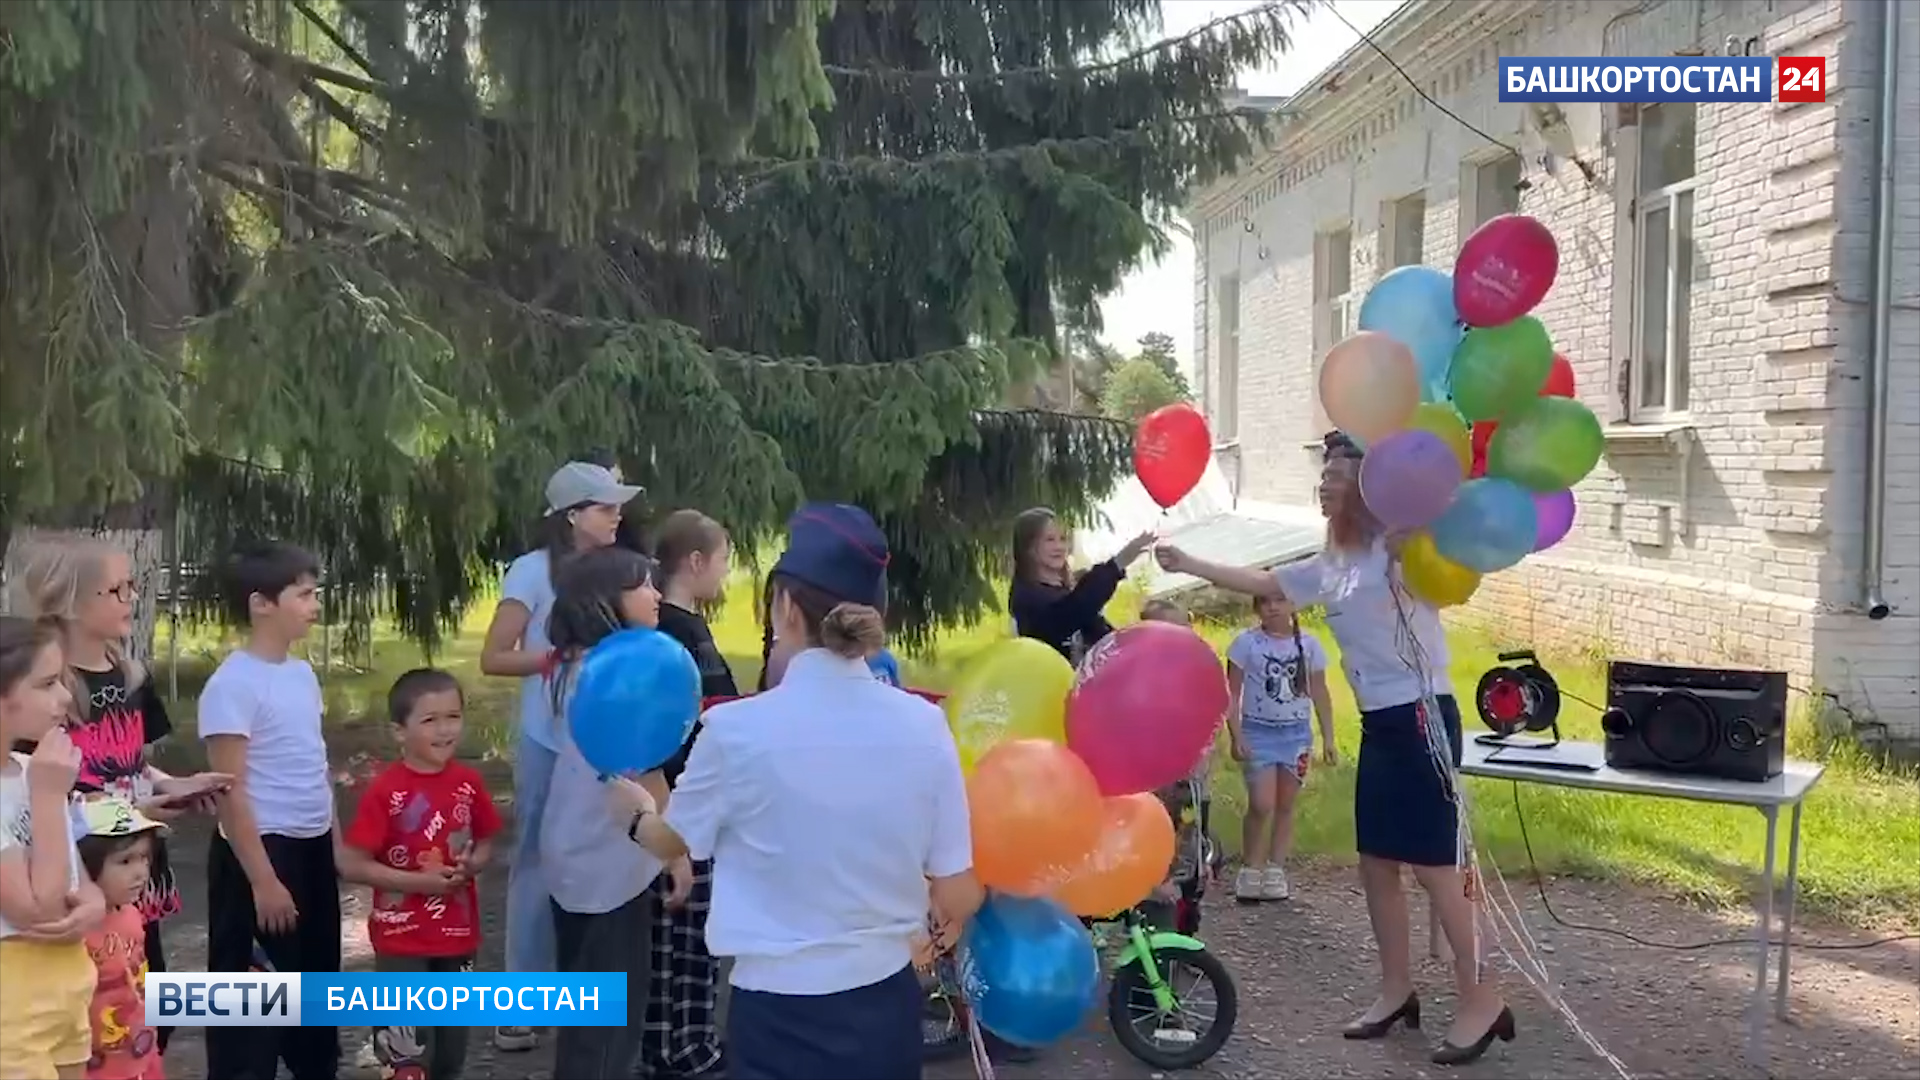 Следователи нагрянули в детский приют в Башкирии и устроили настоящий праздник